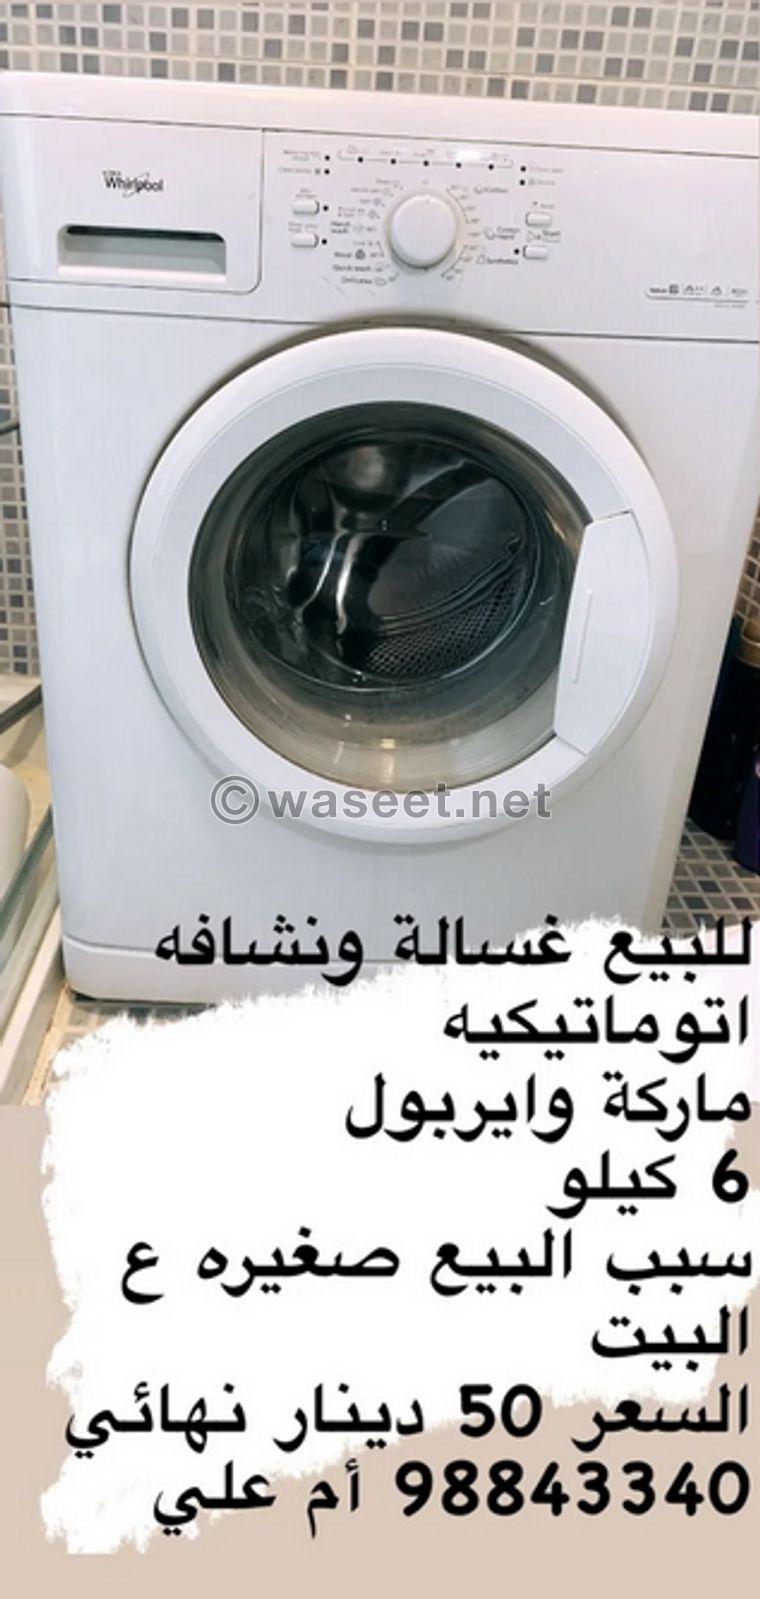 Whirlpool washing machine 0